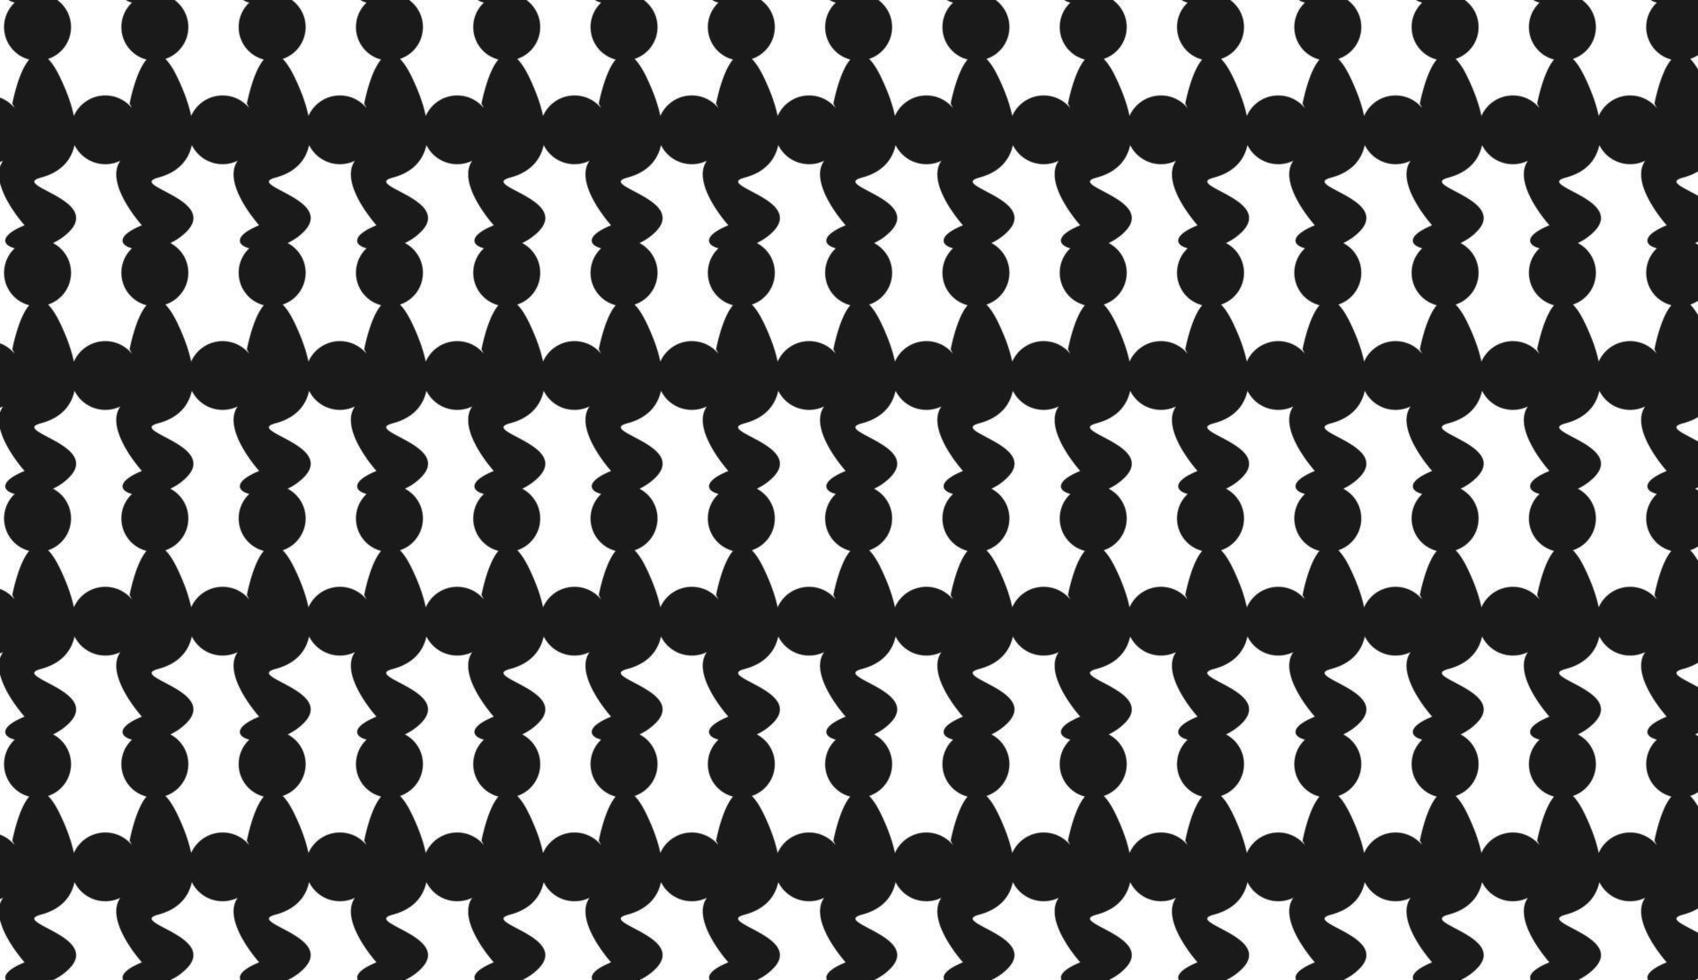 sömlösa mönster av cirklar och vågiga linjer. modern stil mönsterdesign. svartvitt mönster. kan användas för affischer, broschyrer, vykort och andra utskriftsbehov. vektor illustration